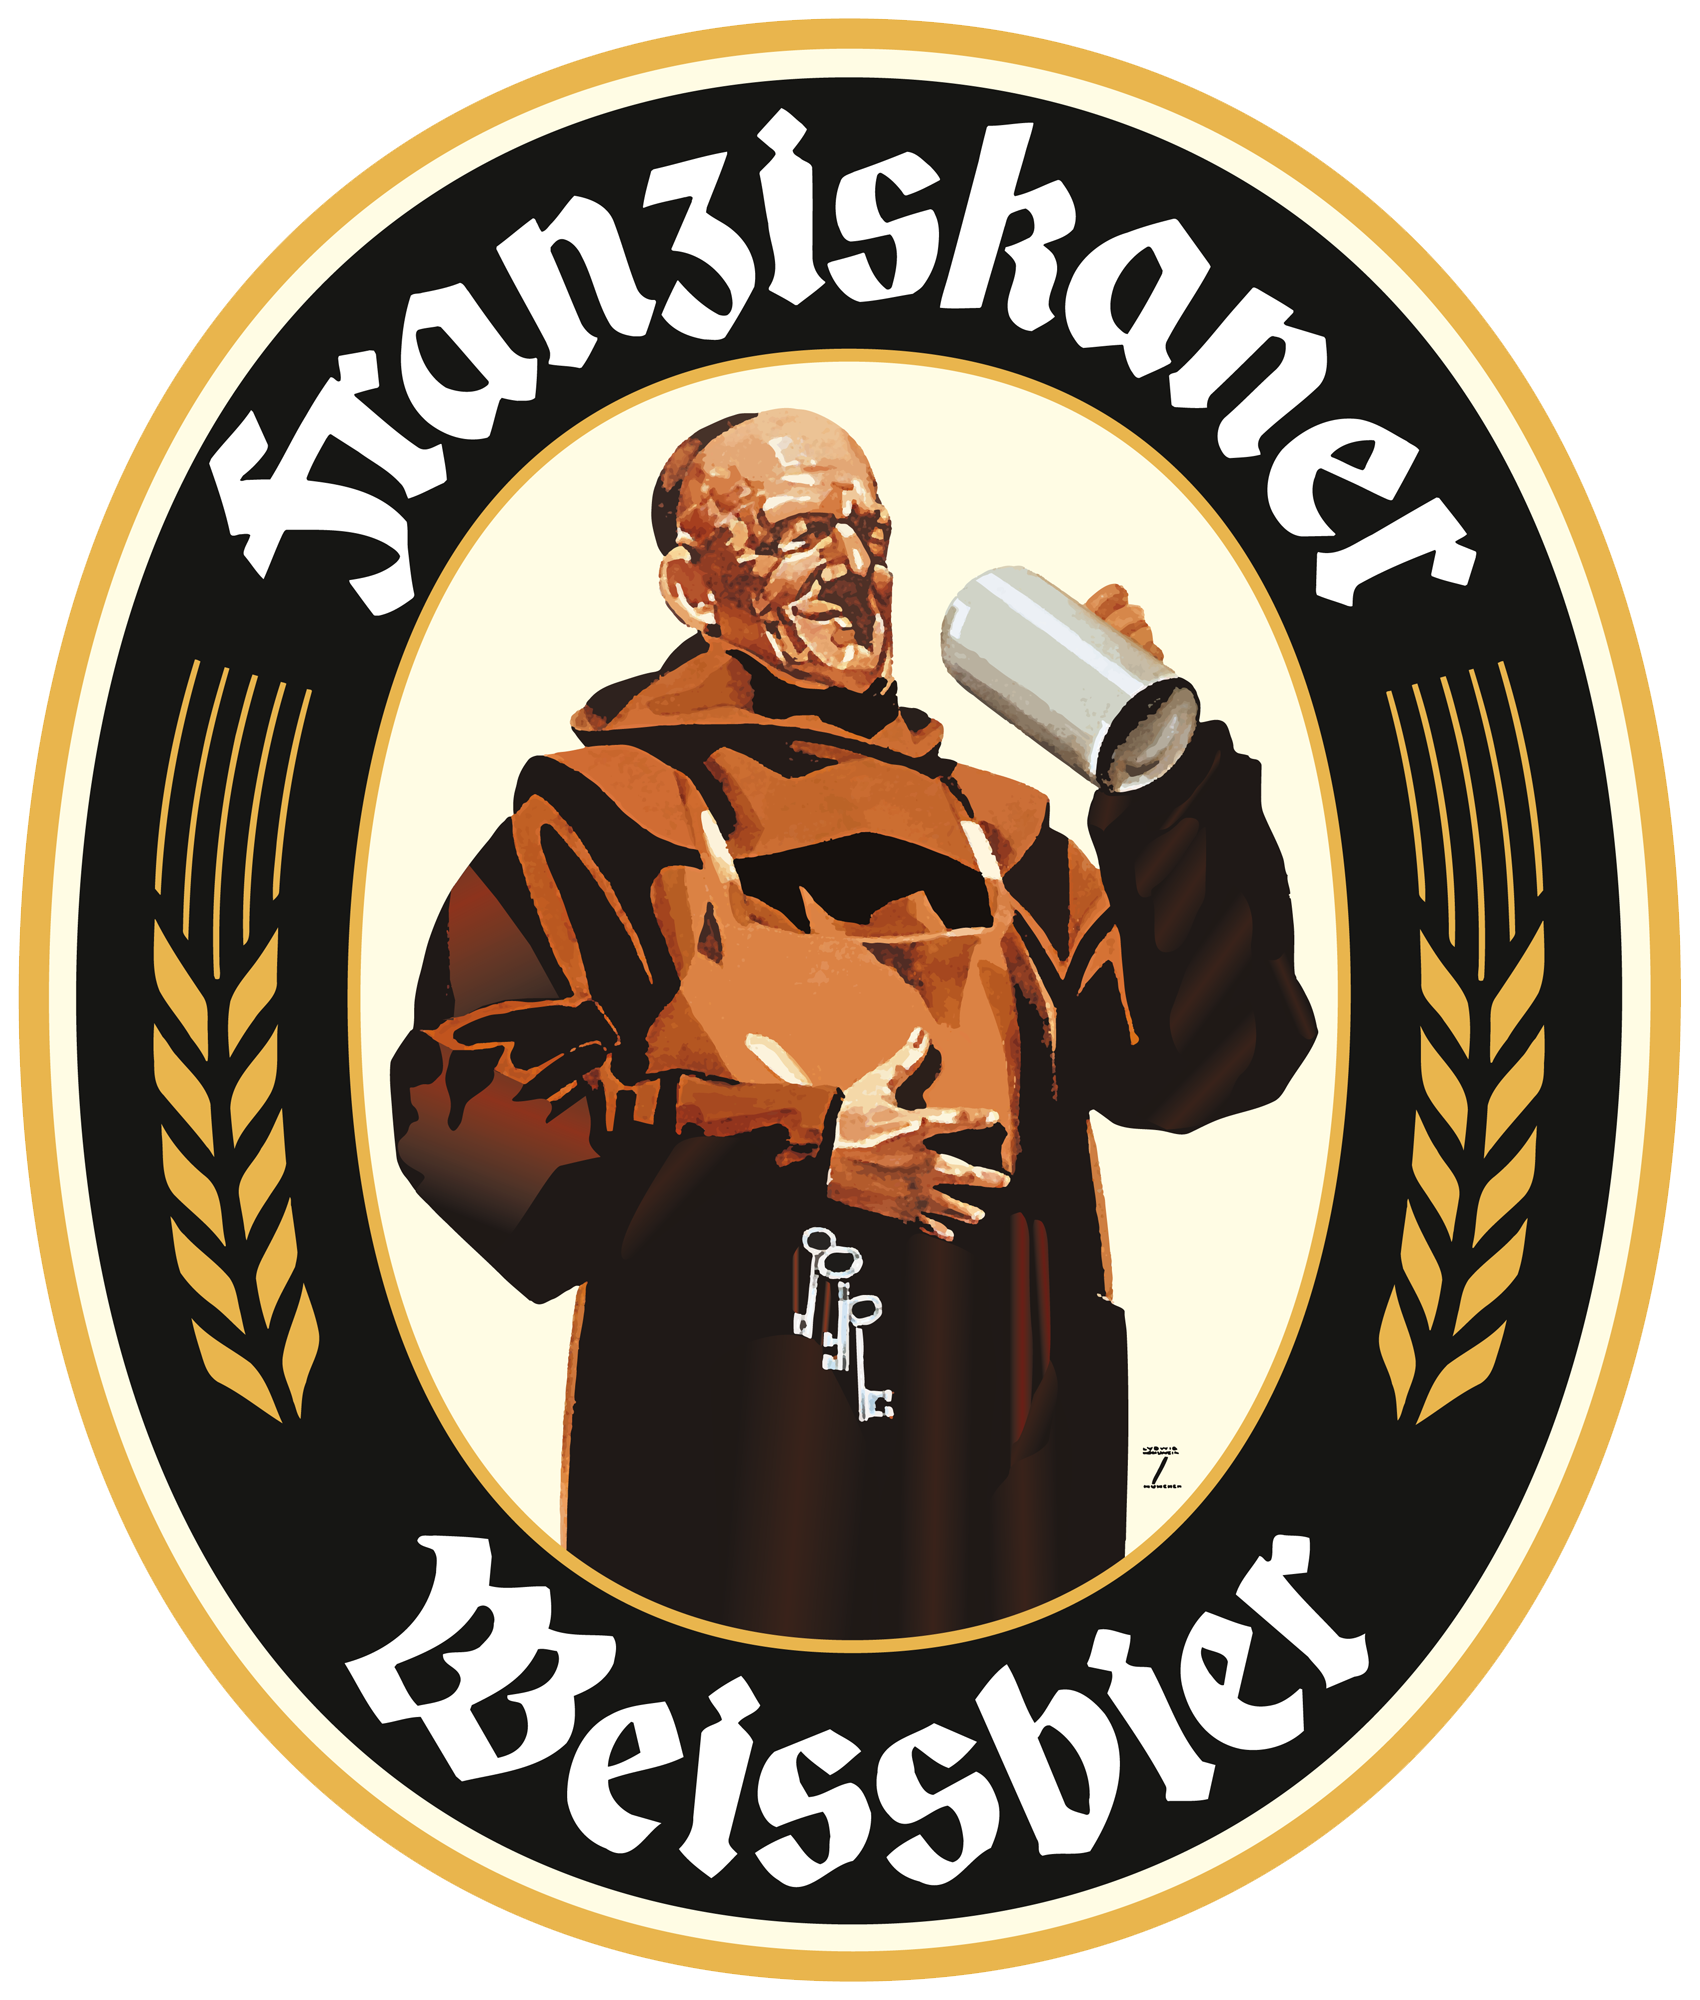 Franziskaner - Wikipedia